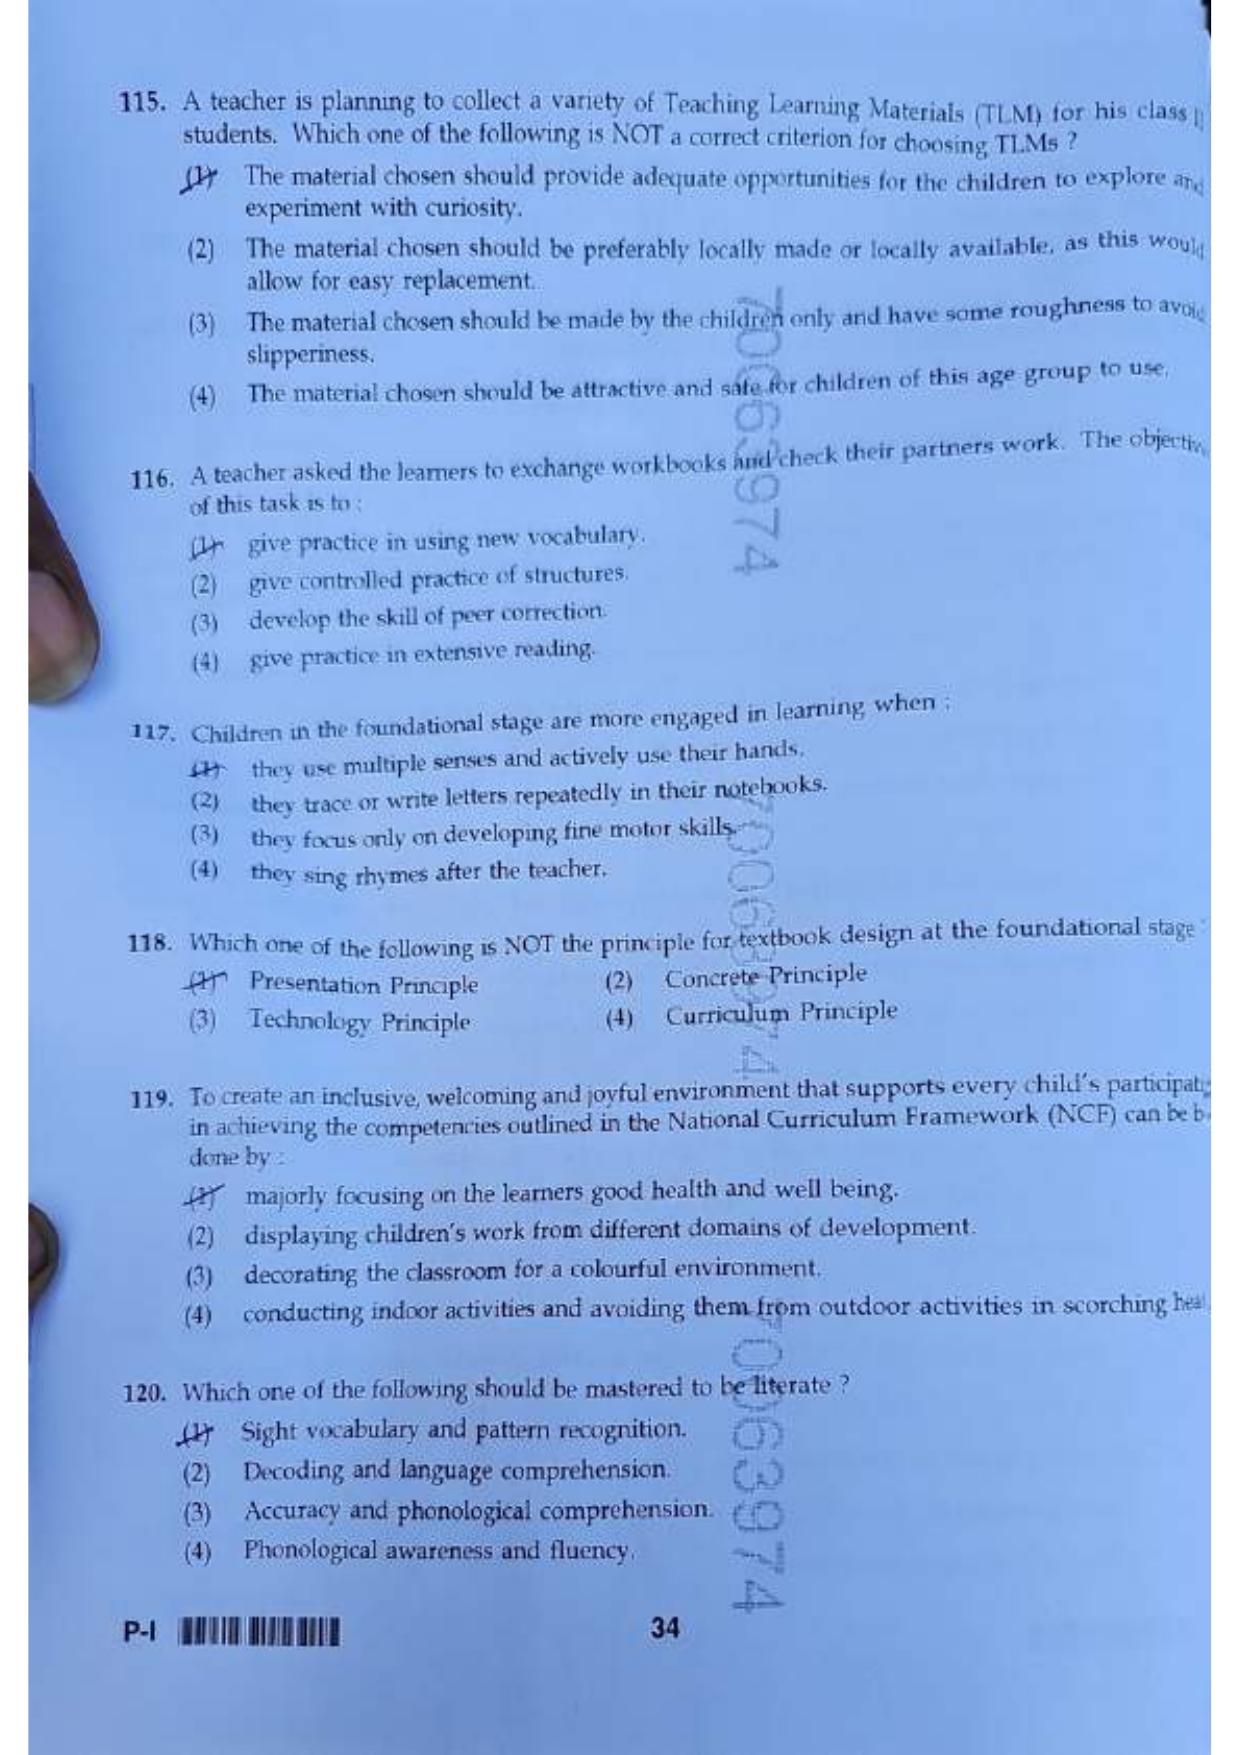 ctet paper 1 question paper SET J - Page 33